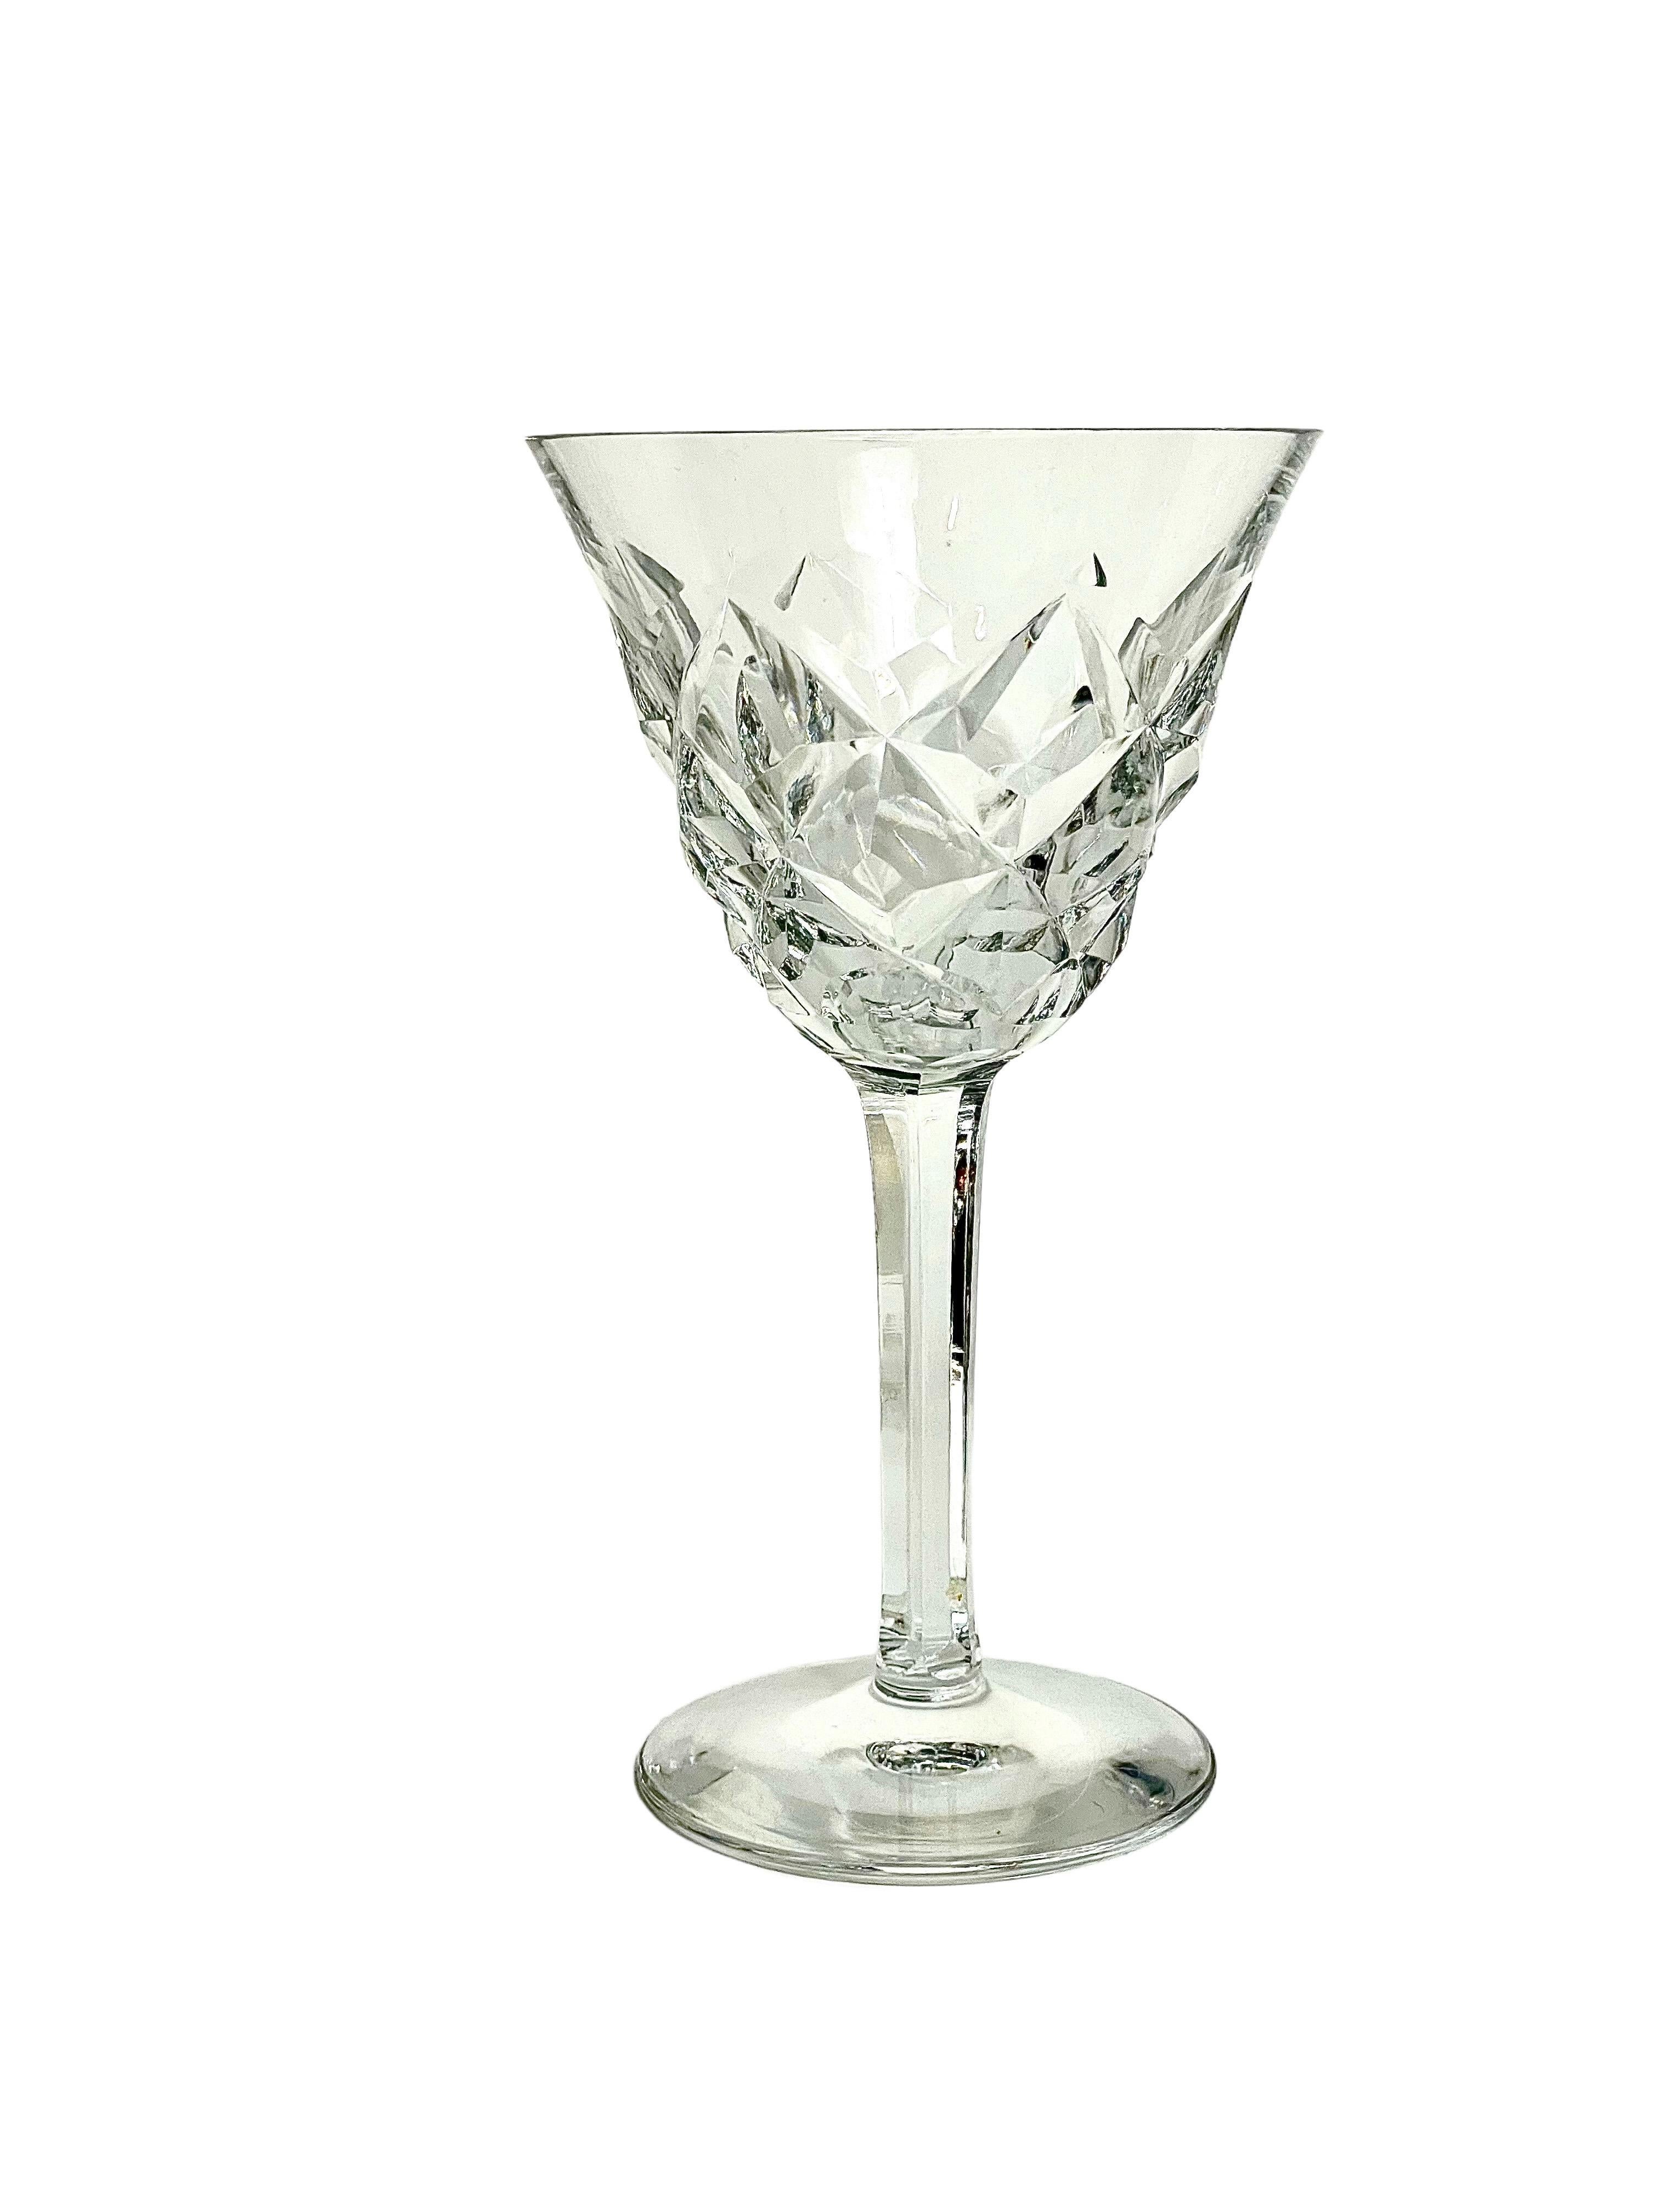 Un ensemble étincelant de 10 verres à vin ou à eau en cristal fin, par Saint Louis, de la série 'Adour'. Datant d'environ 1950, ces lunettes intemporelles présentent le motif classique de l'Adour 